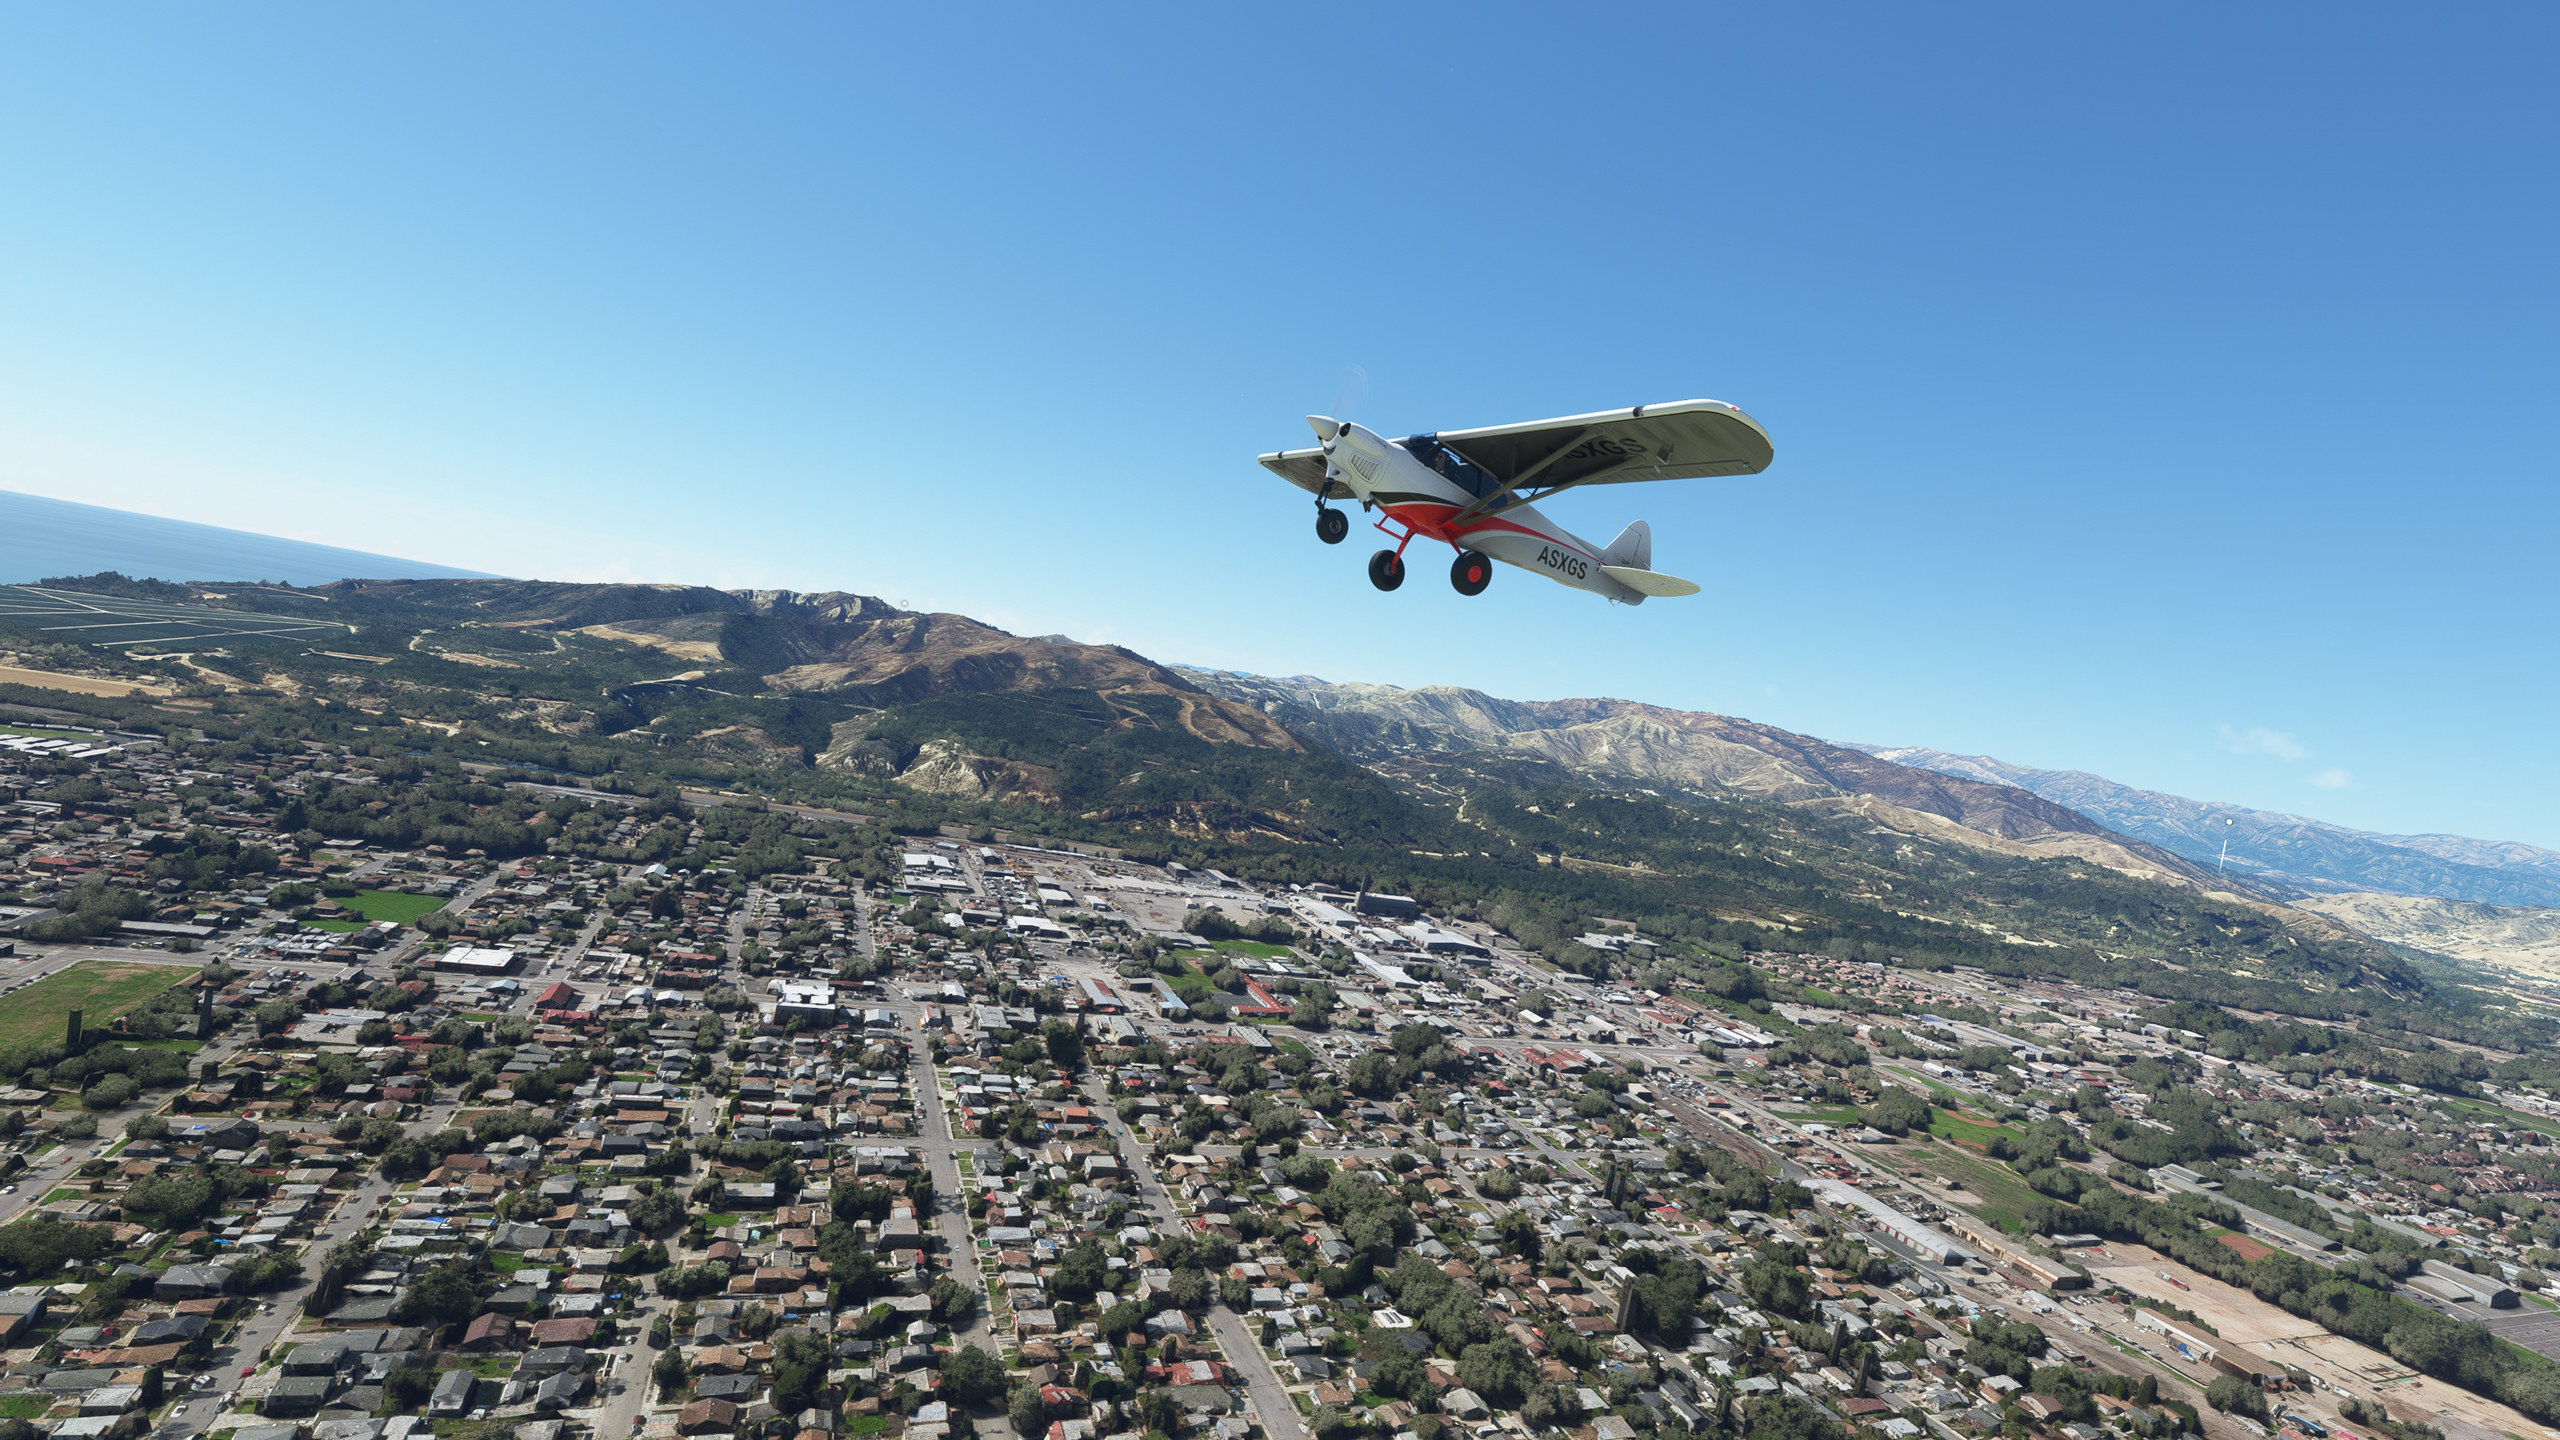 General 2560x1440 Microsoft Flight Simulator 2020 Los Angeles flying airplane ocean view highway landscape digital art video games